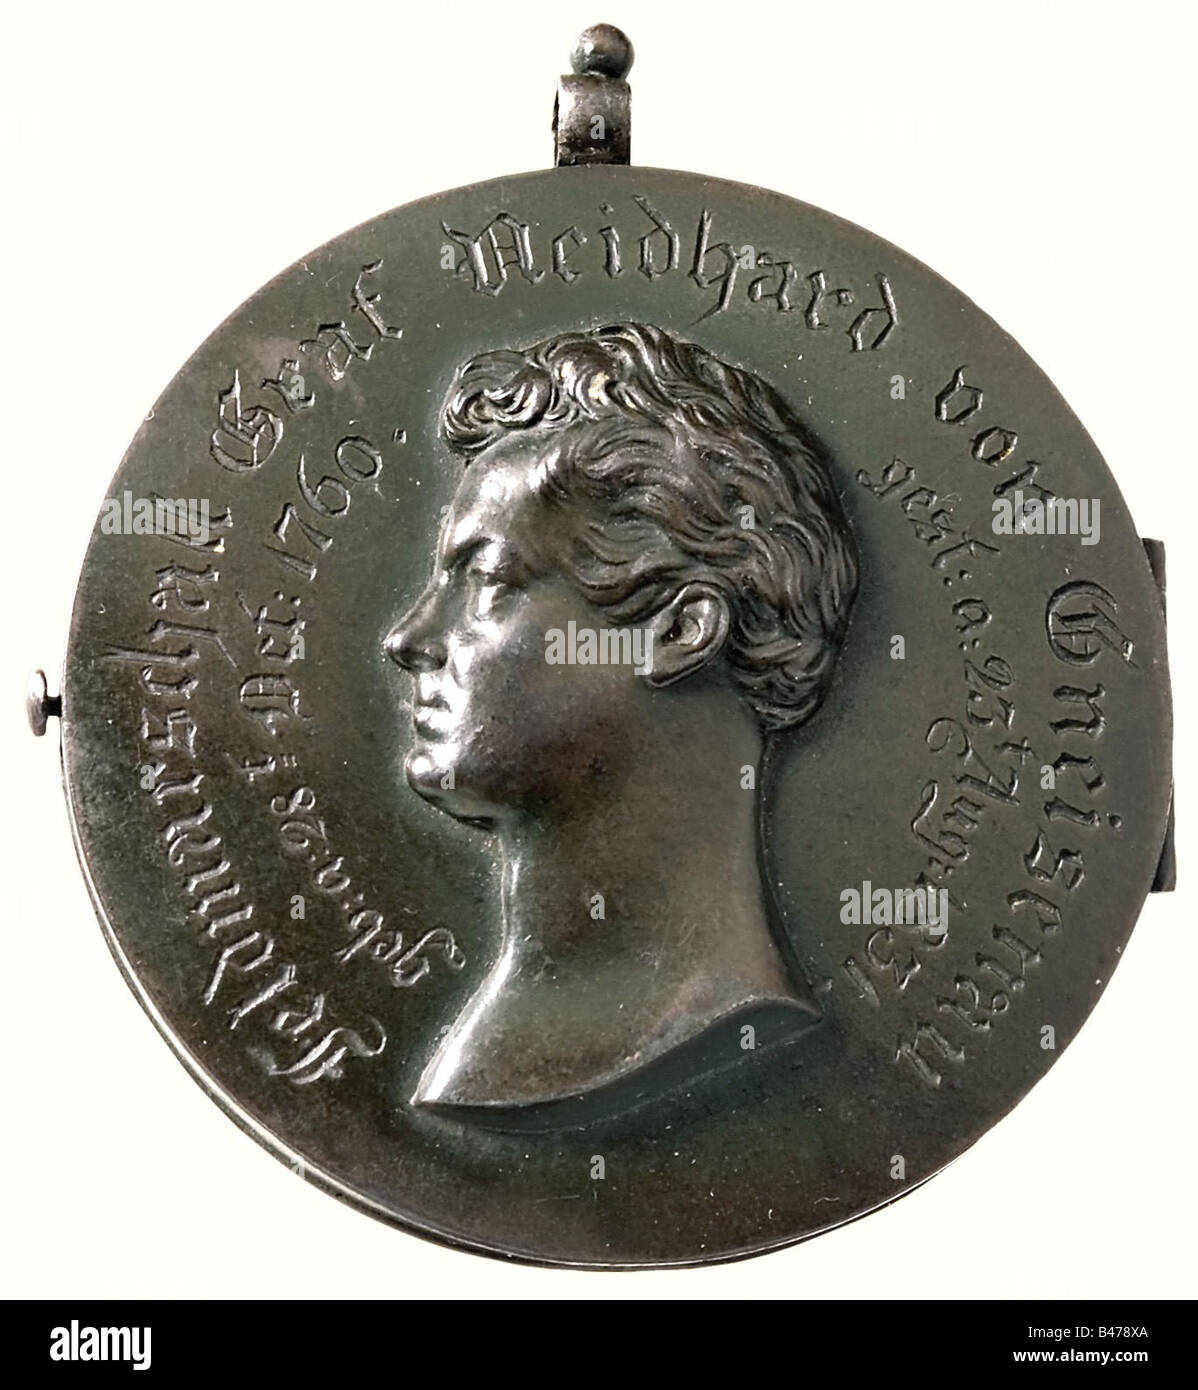 Neidhard Von Gneisenau (1760 - 1831), Maresciallo Di Campo E Riformatore D'Esercito. Un locket in ferro pieghevole, con un ritratto in rilievo della testa di Gneisenau sul davanti, con le date della sua nascita e morte. C'è una croce di ferro in una corona di alloro in rilievo sul retro. All'interno è una ciocca di capelli biondi, presumibilmente Gneisenau, cucita su un pezzo di seta azzurro. Il locket ha la patina verde e un anello di sospensione(?). Diametro 77 mm. Peso 167 grammi. Persone, 19th secolo, Prussia, Prussia, tedesco, Germania, militare, militare, oggetto, oggetti, alambicchi, clippings, Foto Stock